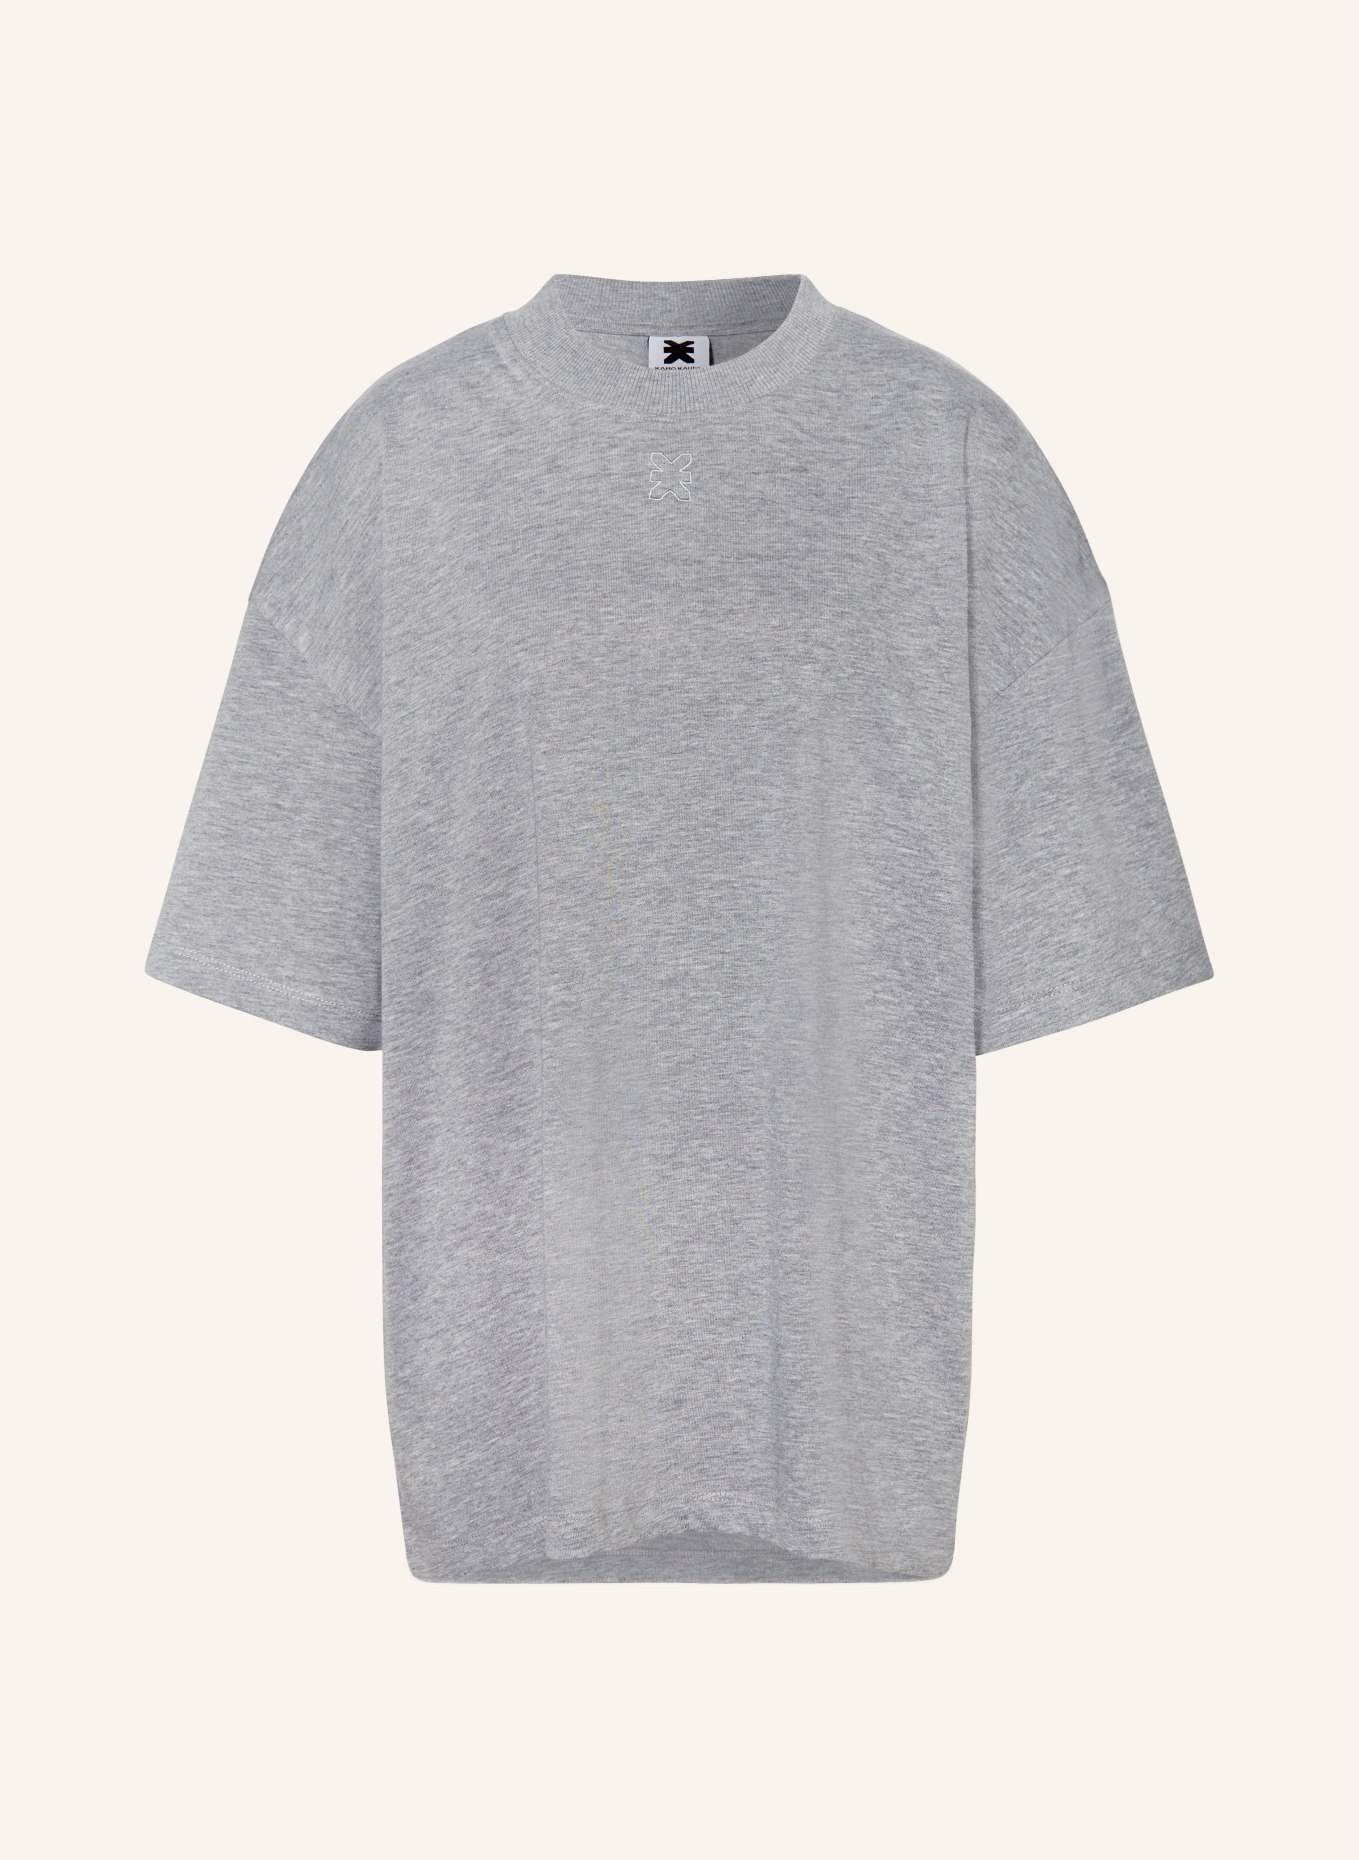 KARO KAUER Oversized shirt, Color: GRAY (Image 1)